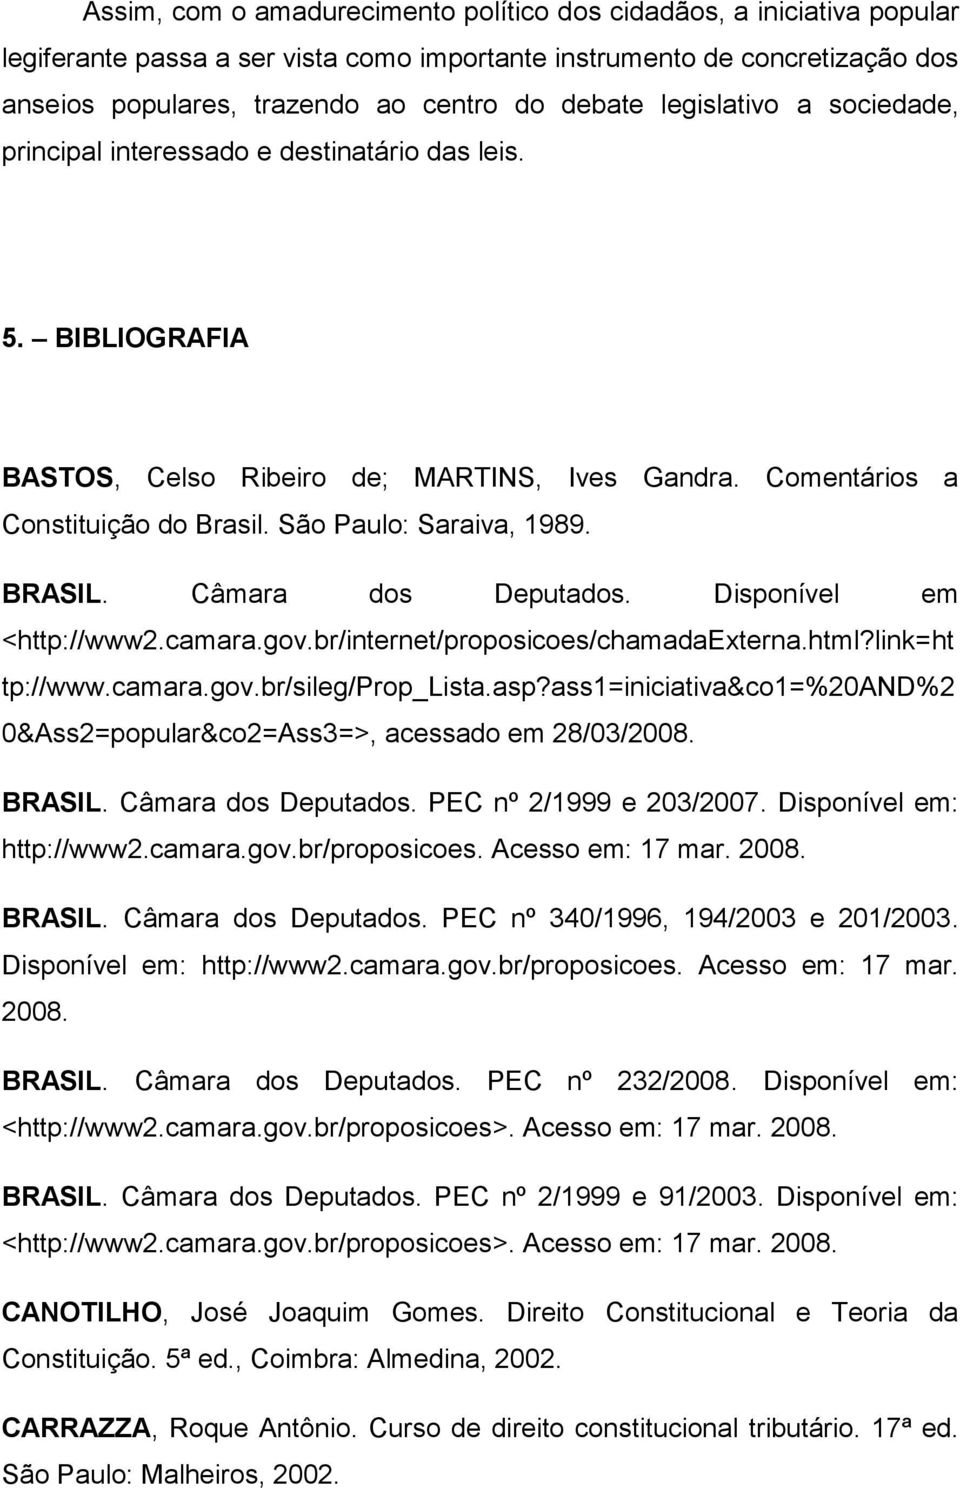 BRASIL. Câmara dos Deputados. Disponível em <http://www2.camara.gov.br/internet/proposicoes/chamadaexterna.html?link=ht tp://www.camara.gov.br/sileg/prop_lista.asp?